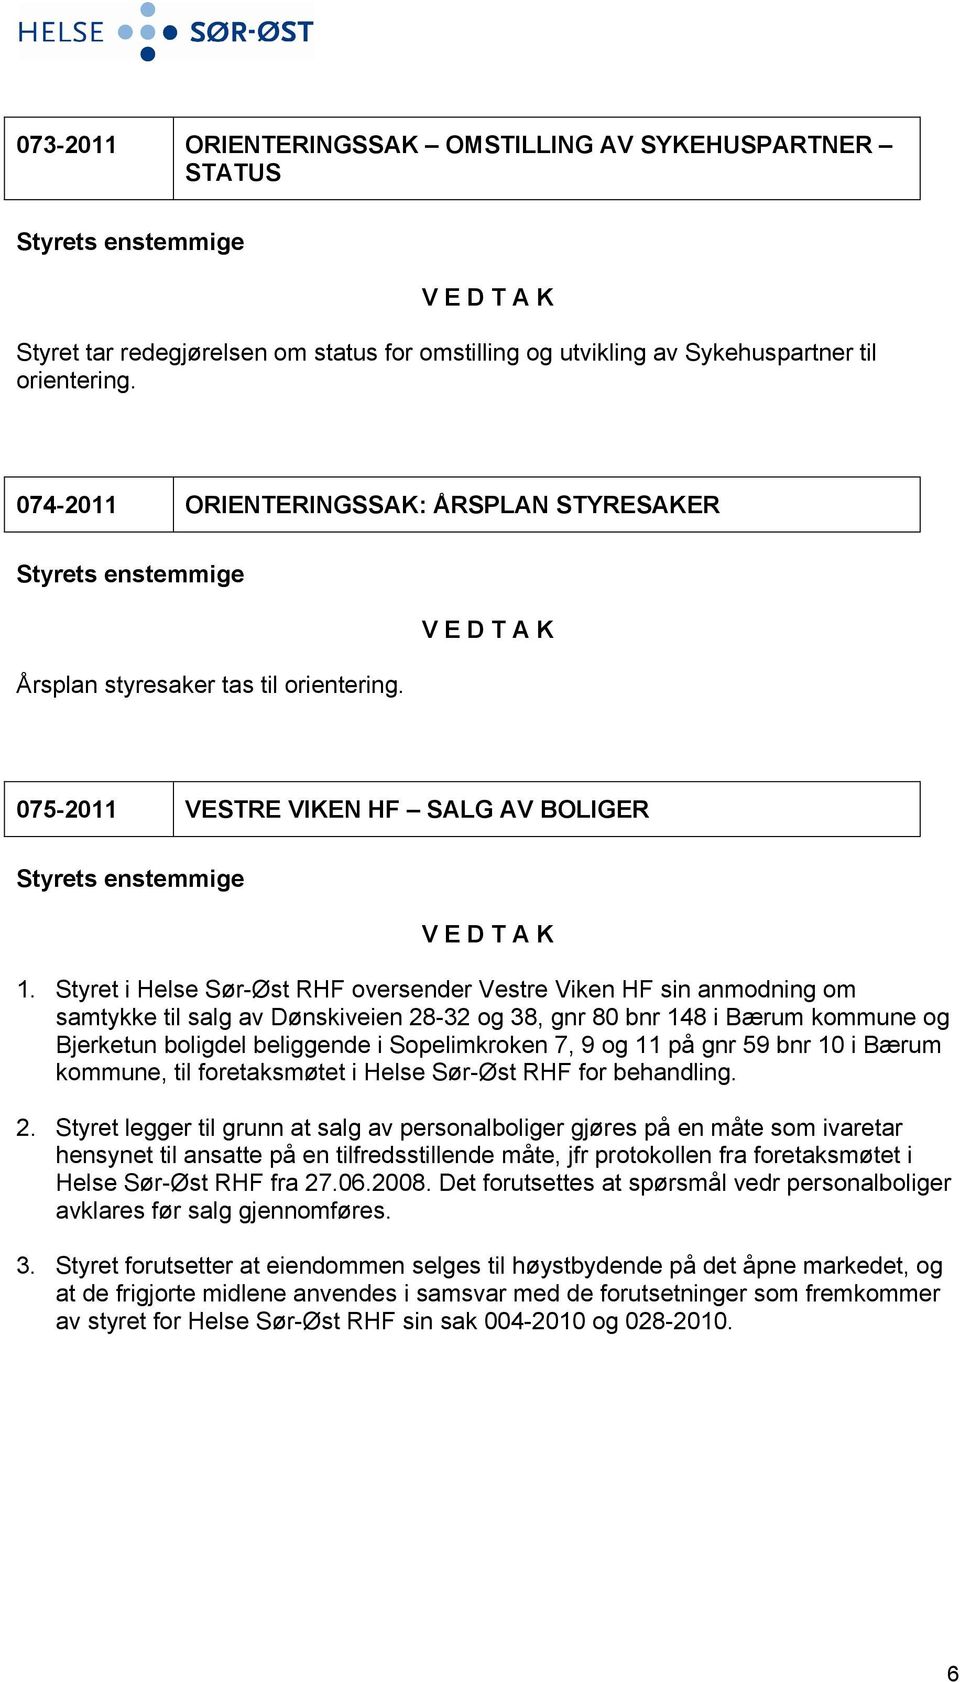 Styret i Helse Sør-Øst RHF oversender Vestre Viken HF sin anmodning om samtykke til salg av Dønskiveien 28-32 og 38, gnr 80 bnr 148 i Bærum kommune og Bjerketun boligdel beliggende i Sopelimkroken 7,